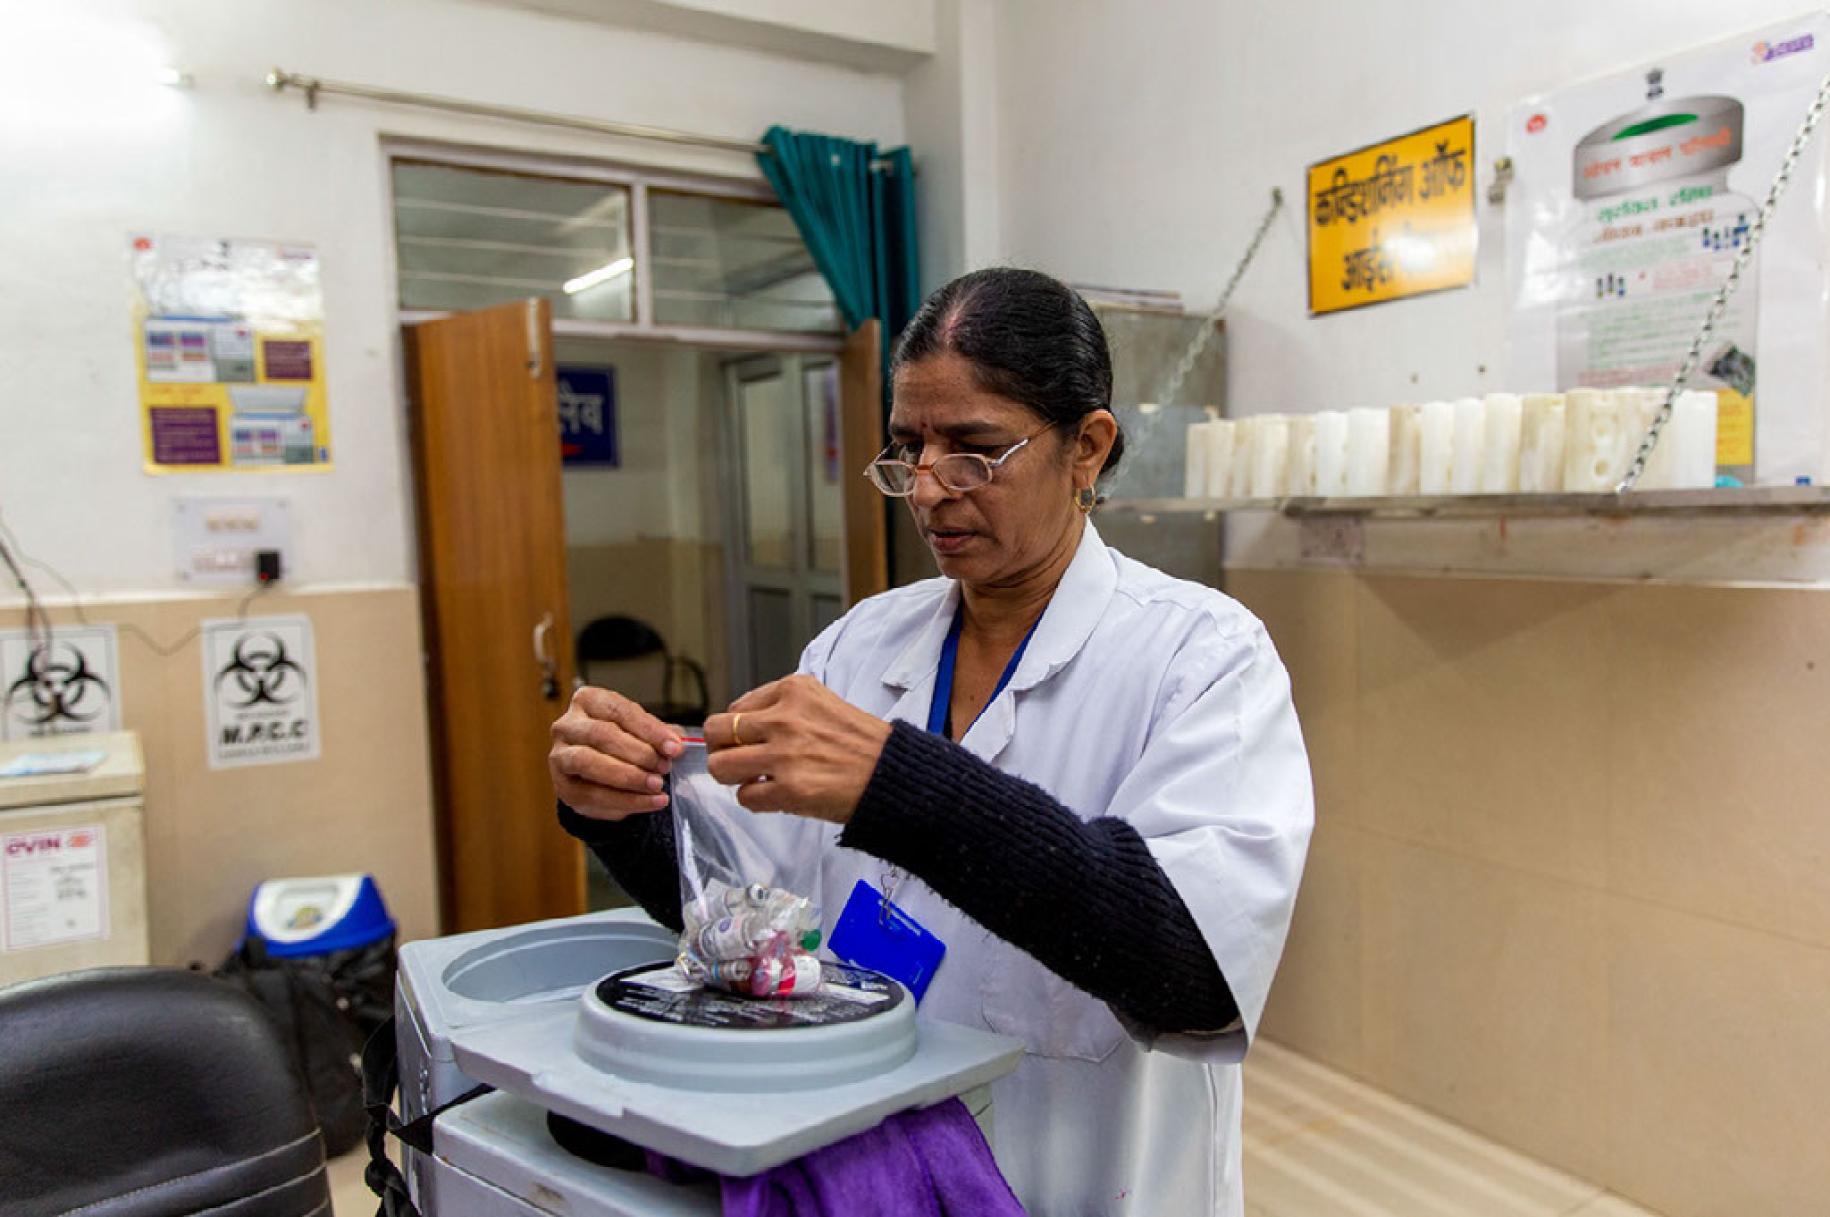 Una profesional de la medicina recoge las vacunas y los viales en una bolsa de plástico.